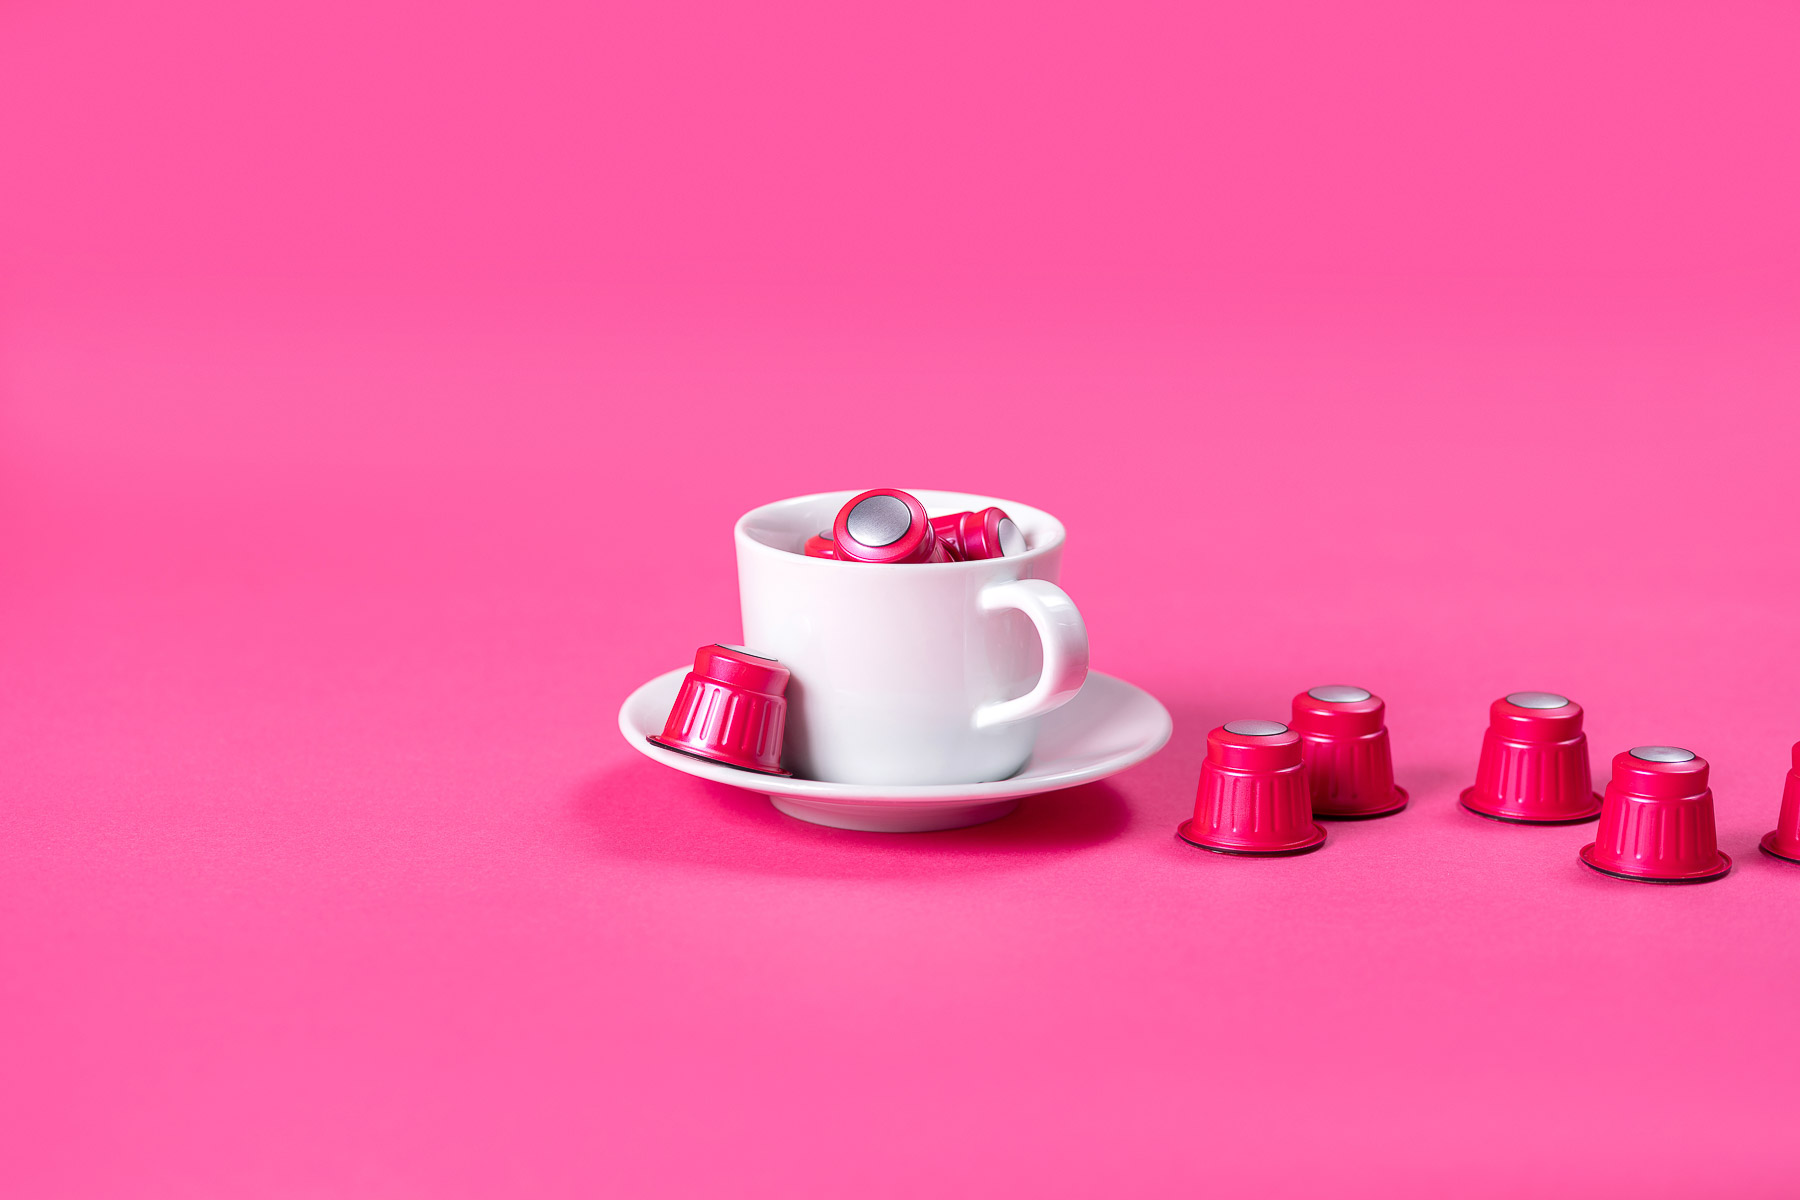 Rote Kaffekapseln in einer Kaffee-Tasse fotografiert, in einer pinken Umgebung.